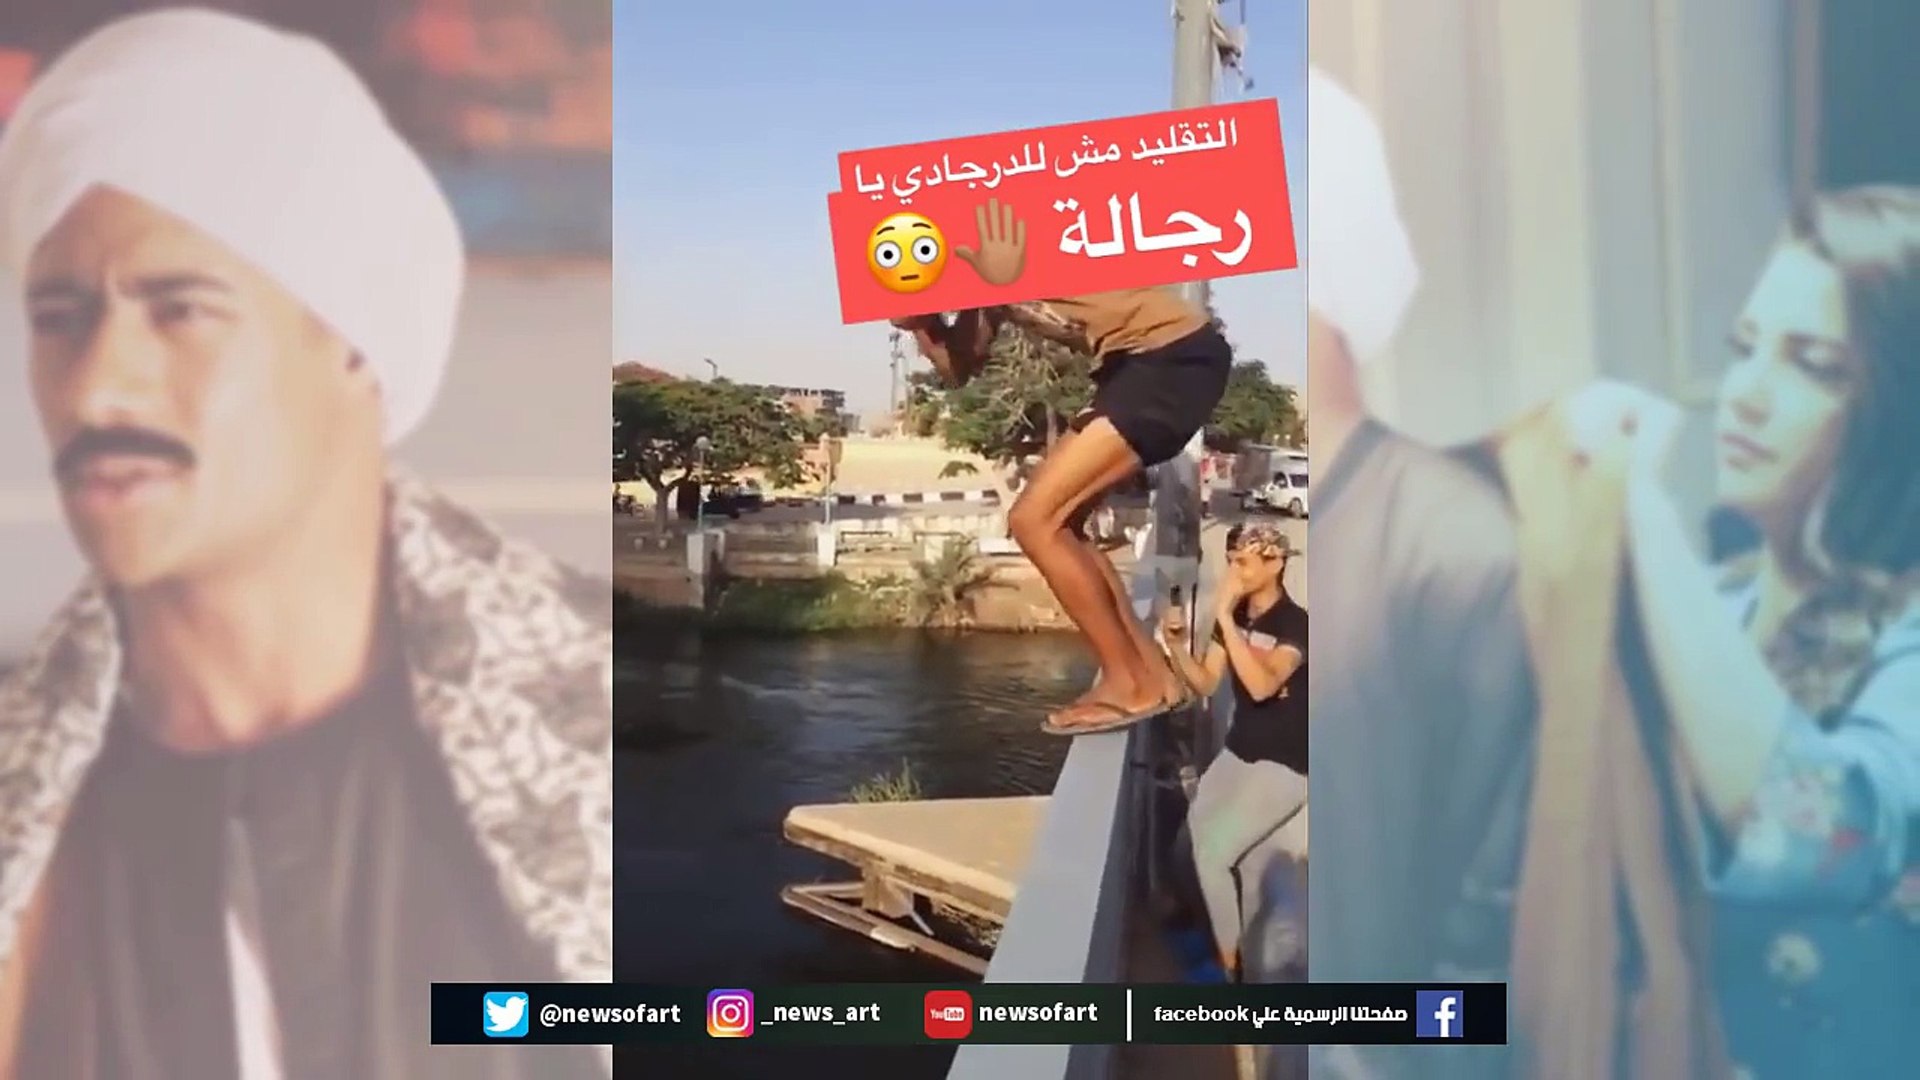 ⁣شاهد _شاب يقفز في النيل على طريقة محمد رمضان I رمضان 2018